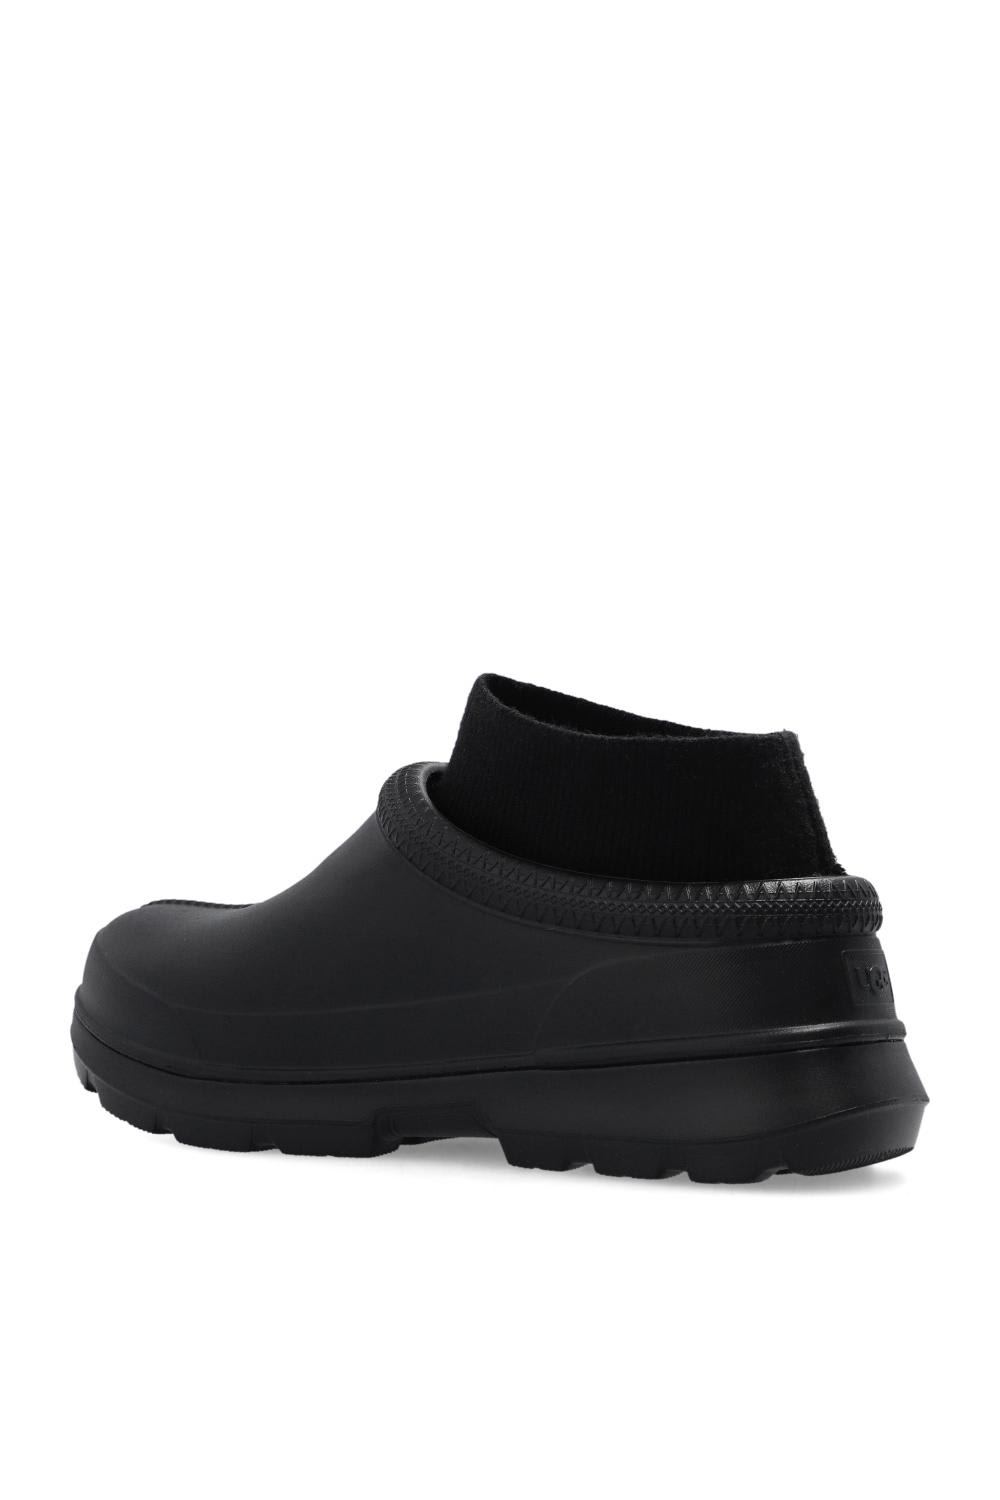 Shop Ugg Tasman X Slip-on Shoes In Black